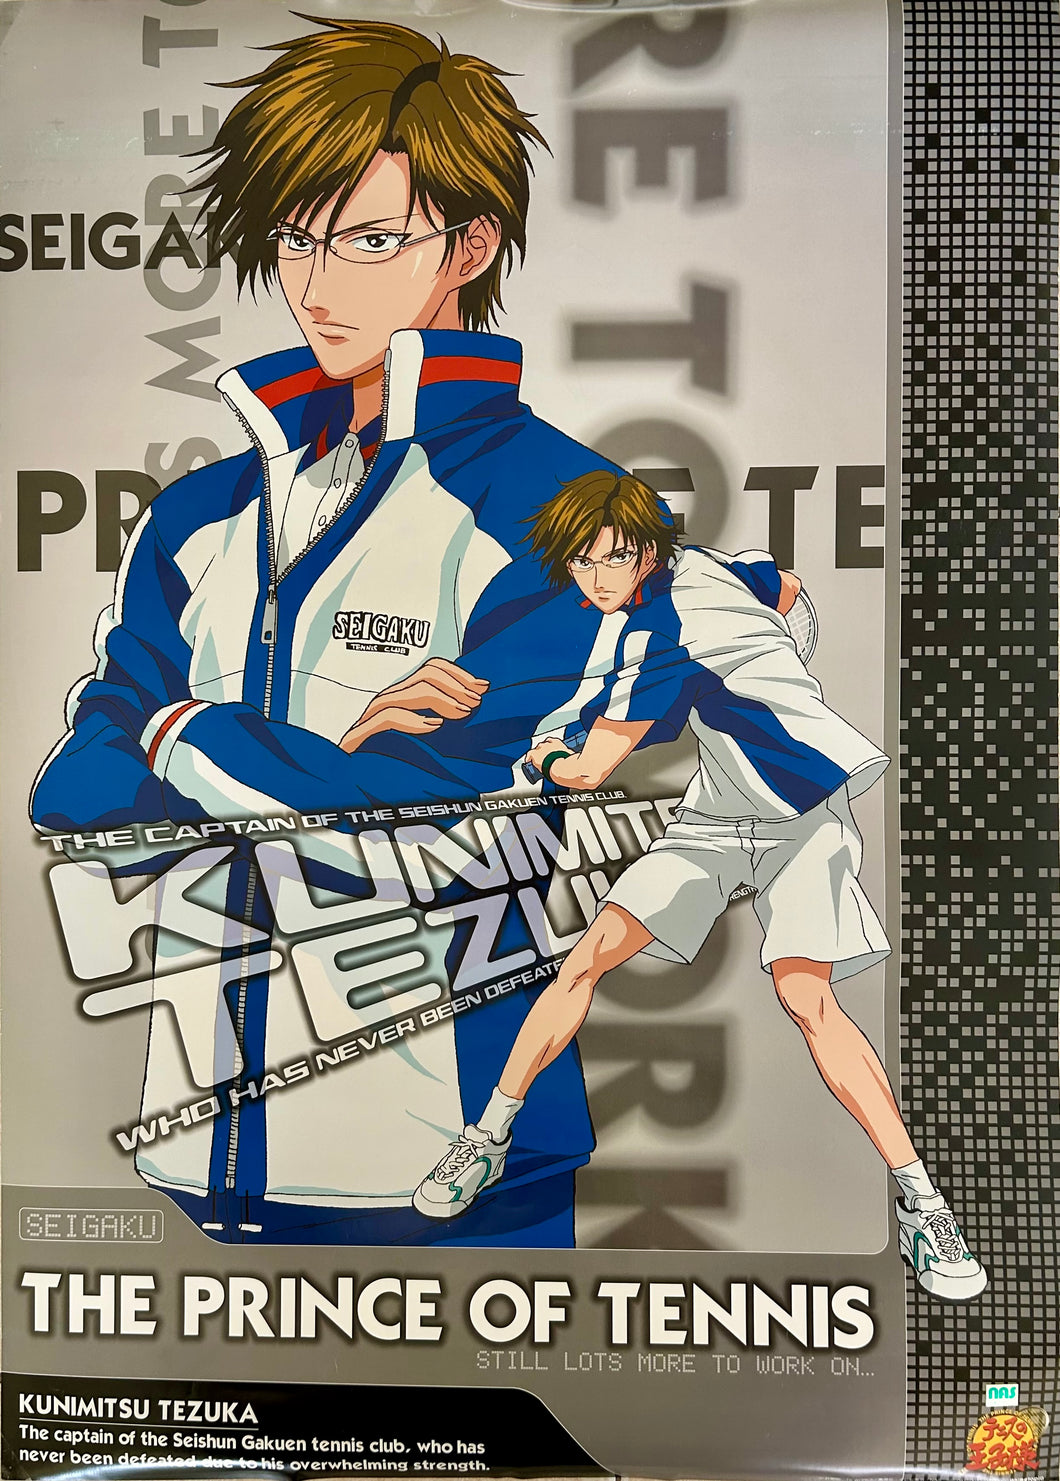 The Prince of Tennis - Kunimitsu Tesuka - B2 Poster